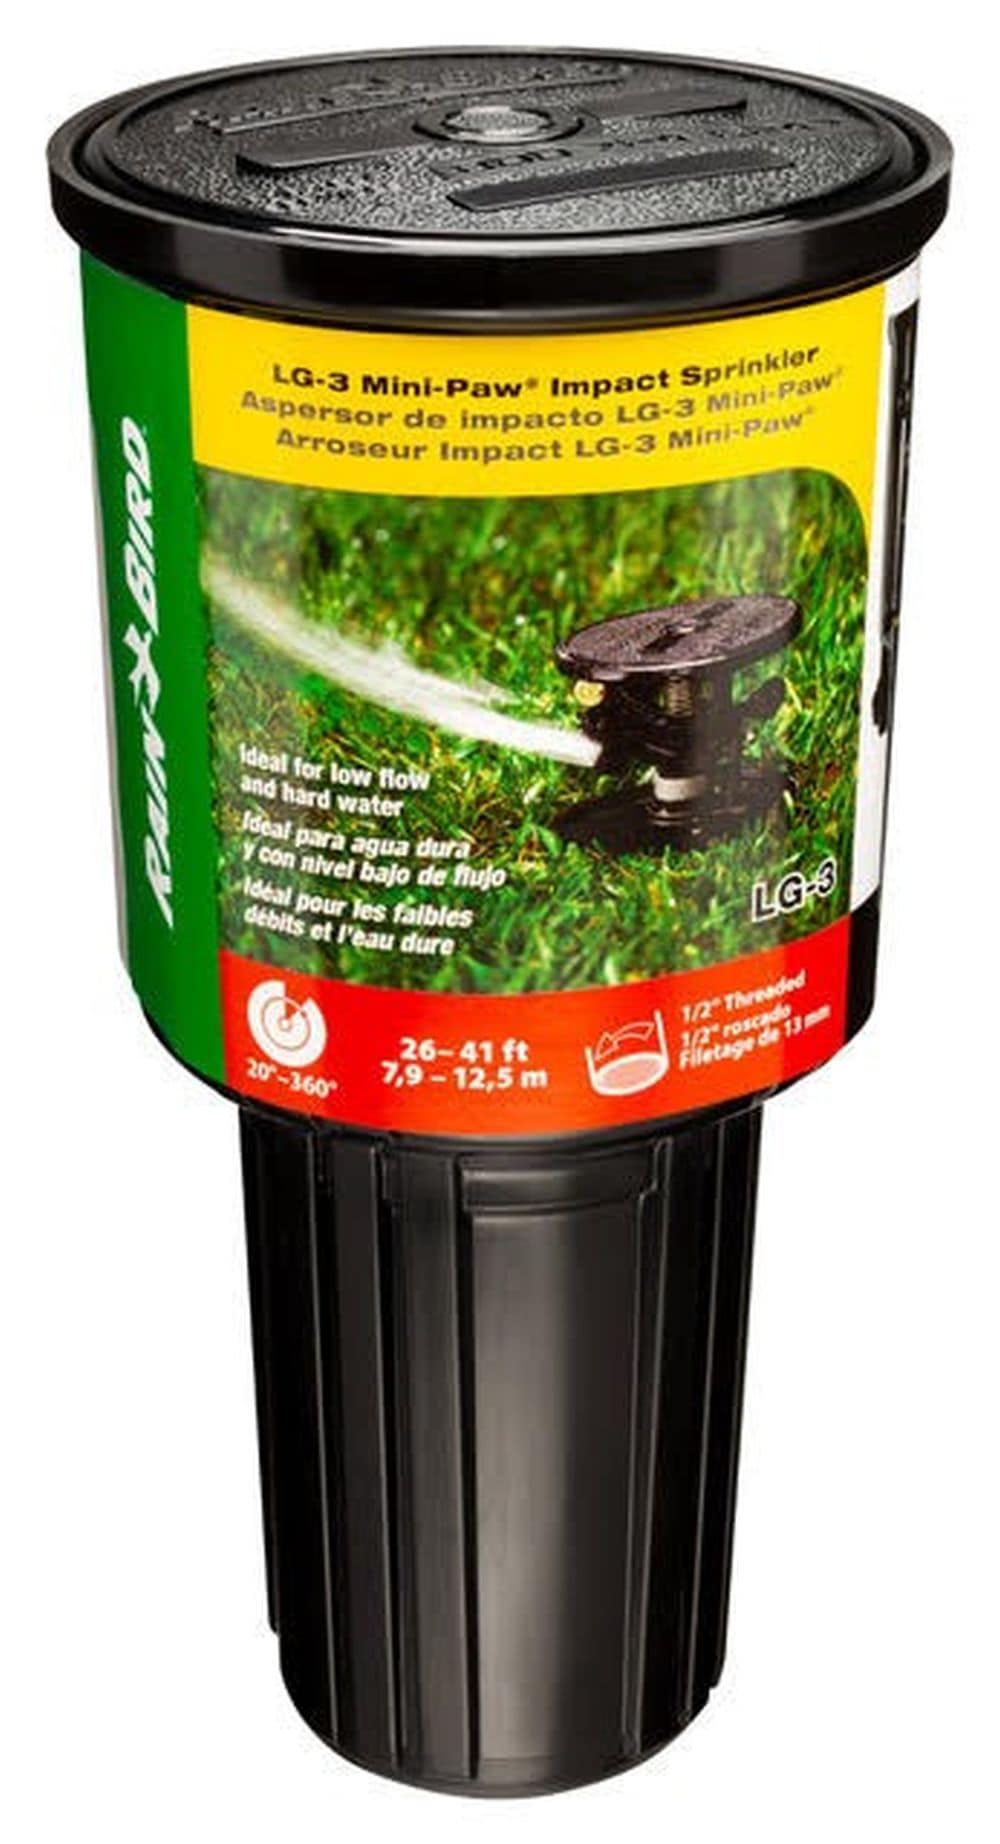 Rainbird National Sls 3PK Pop-Up Impulse Sprinkler,No LG-3 